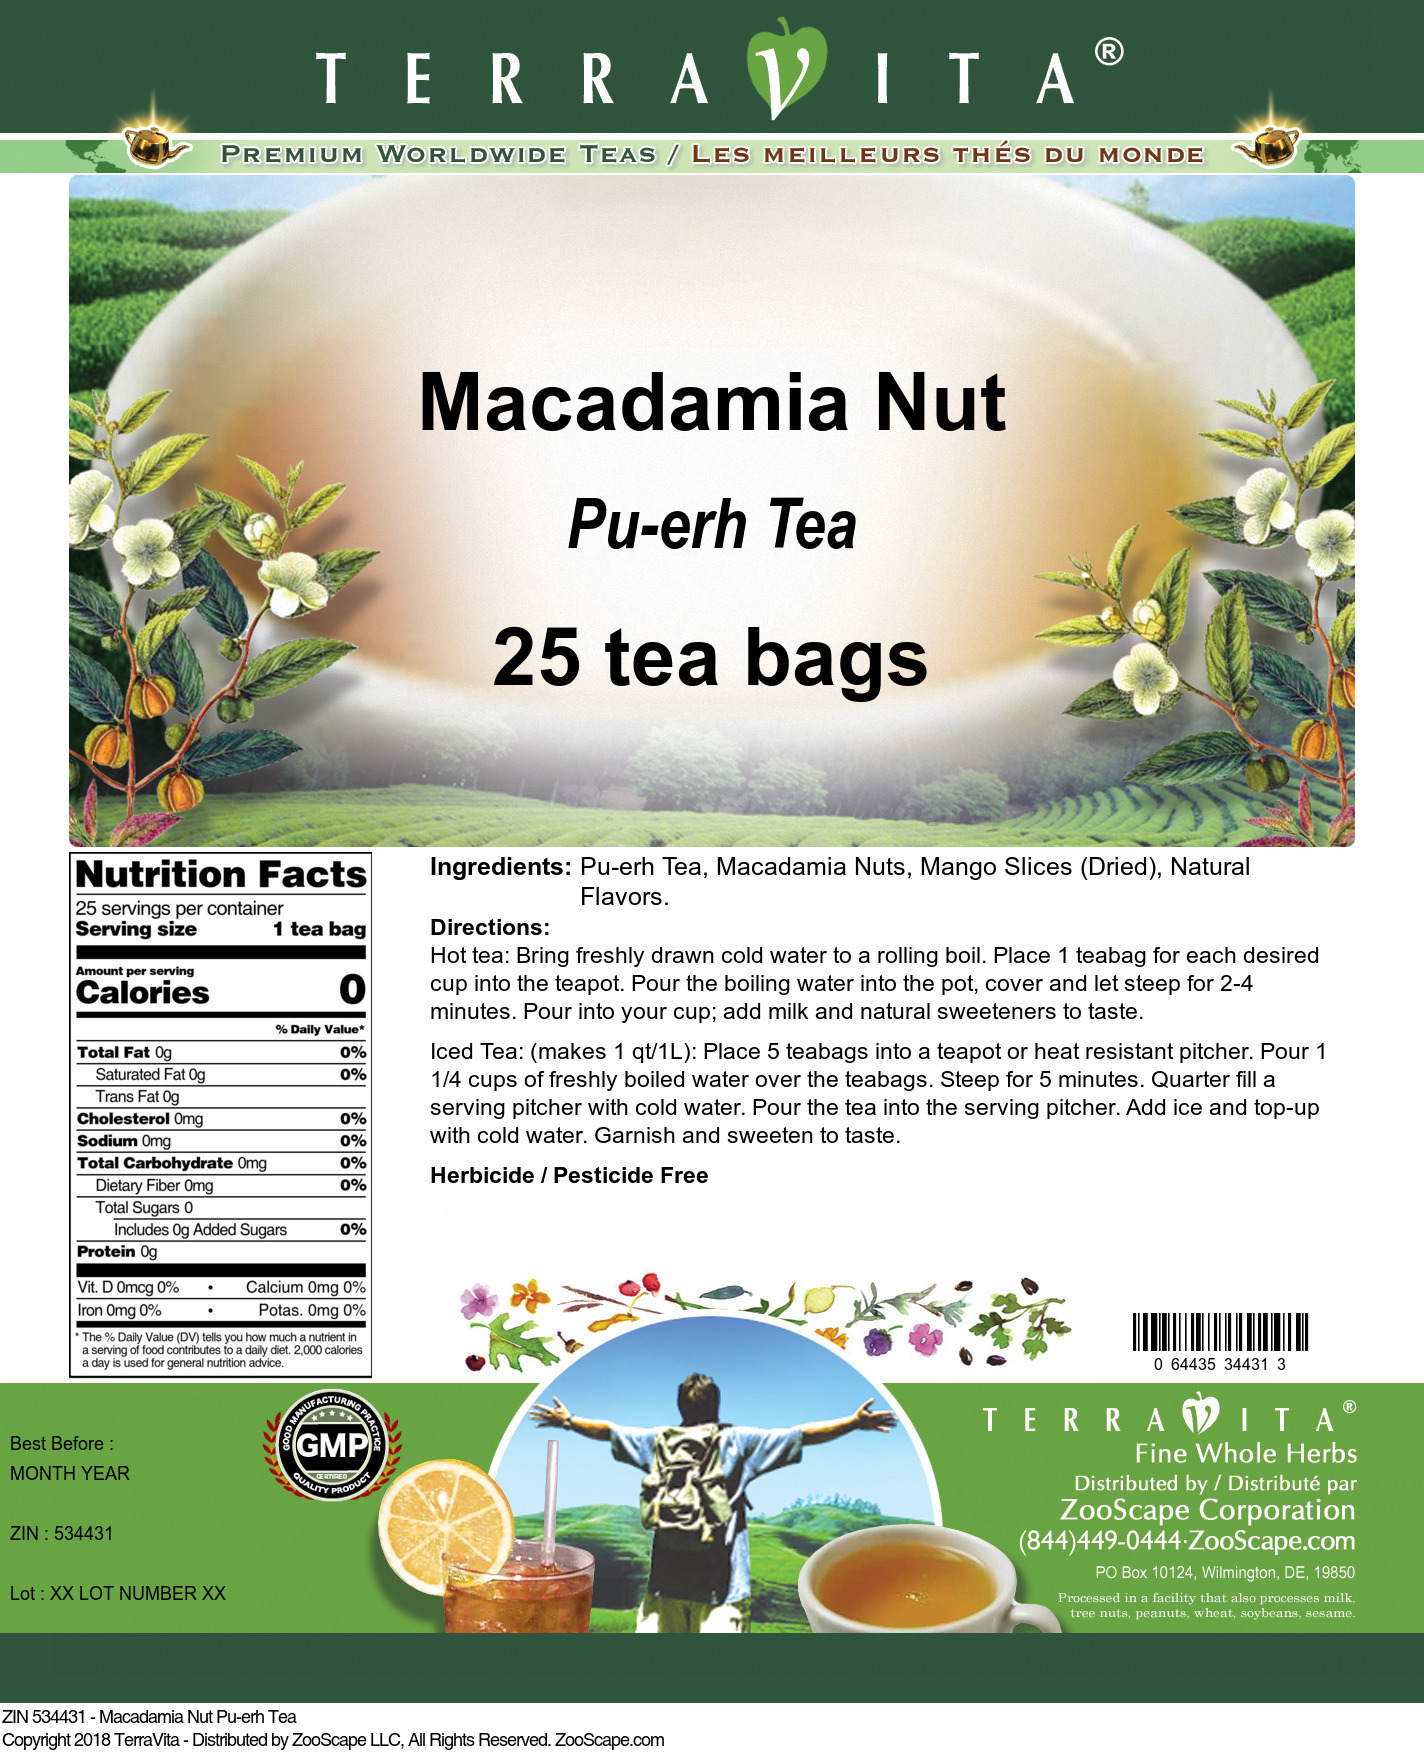 Macadamia Nut Pu-erh Tea - Label